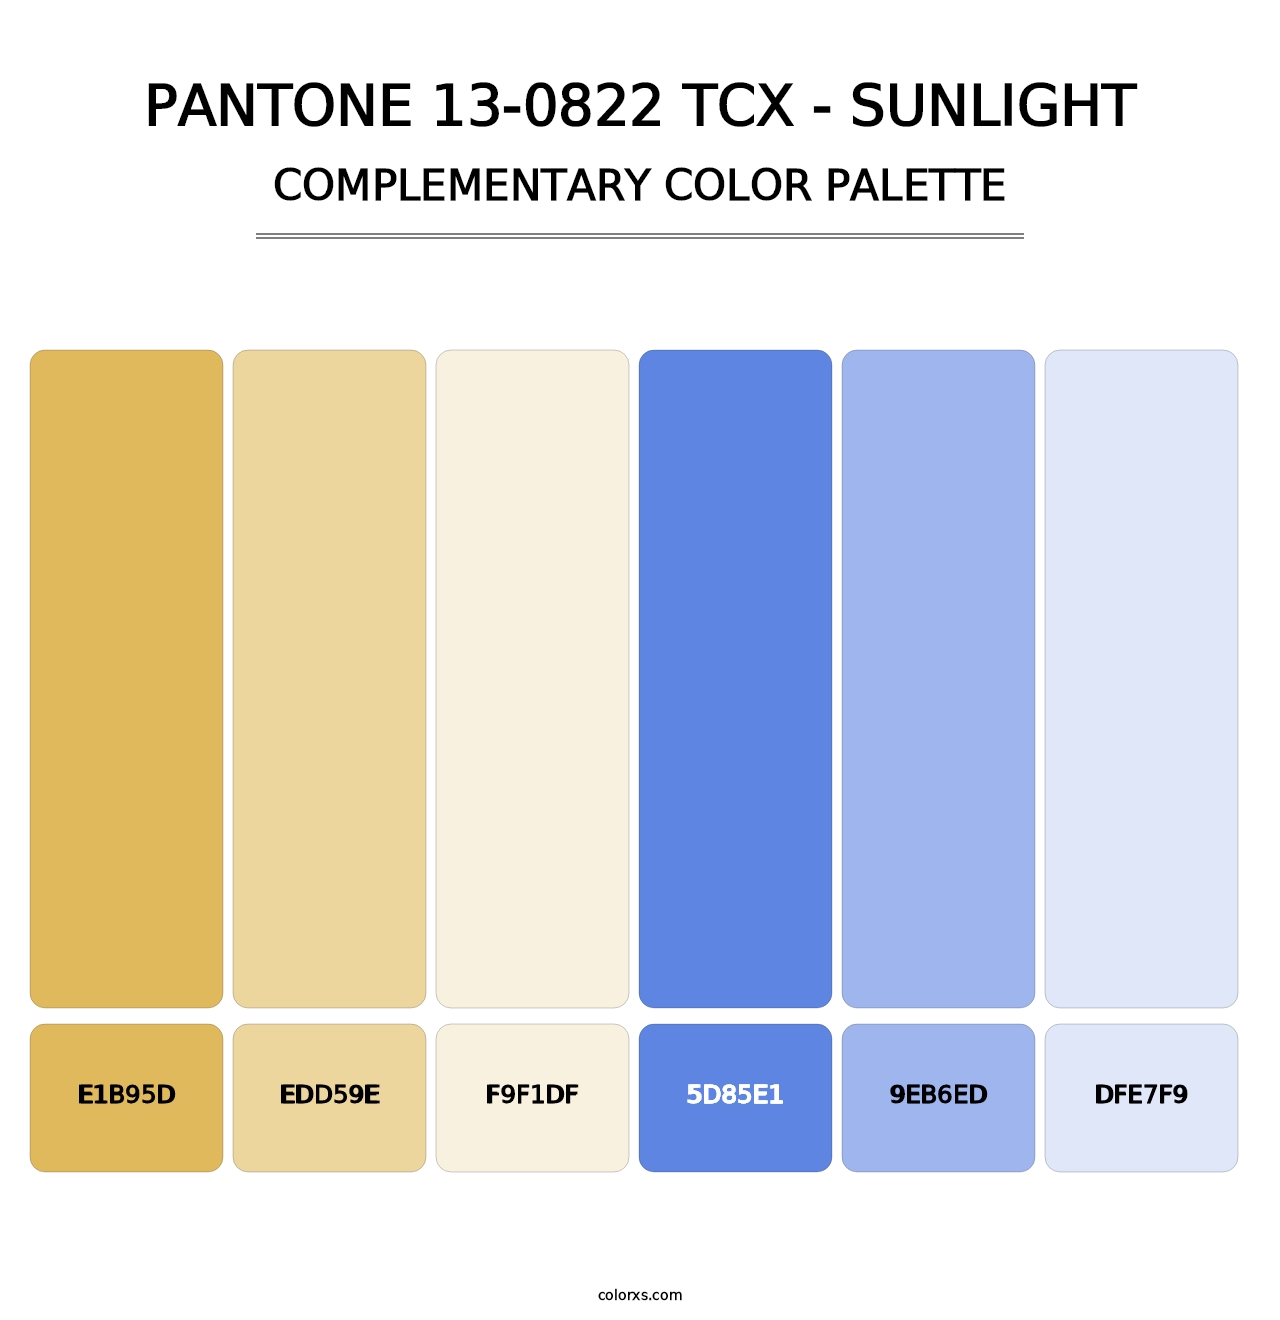 PANTONE 13-0822 TCX - Sunlight - Complementary Color Palette